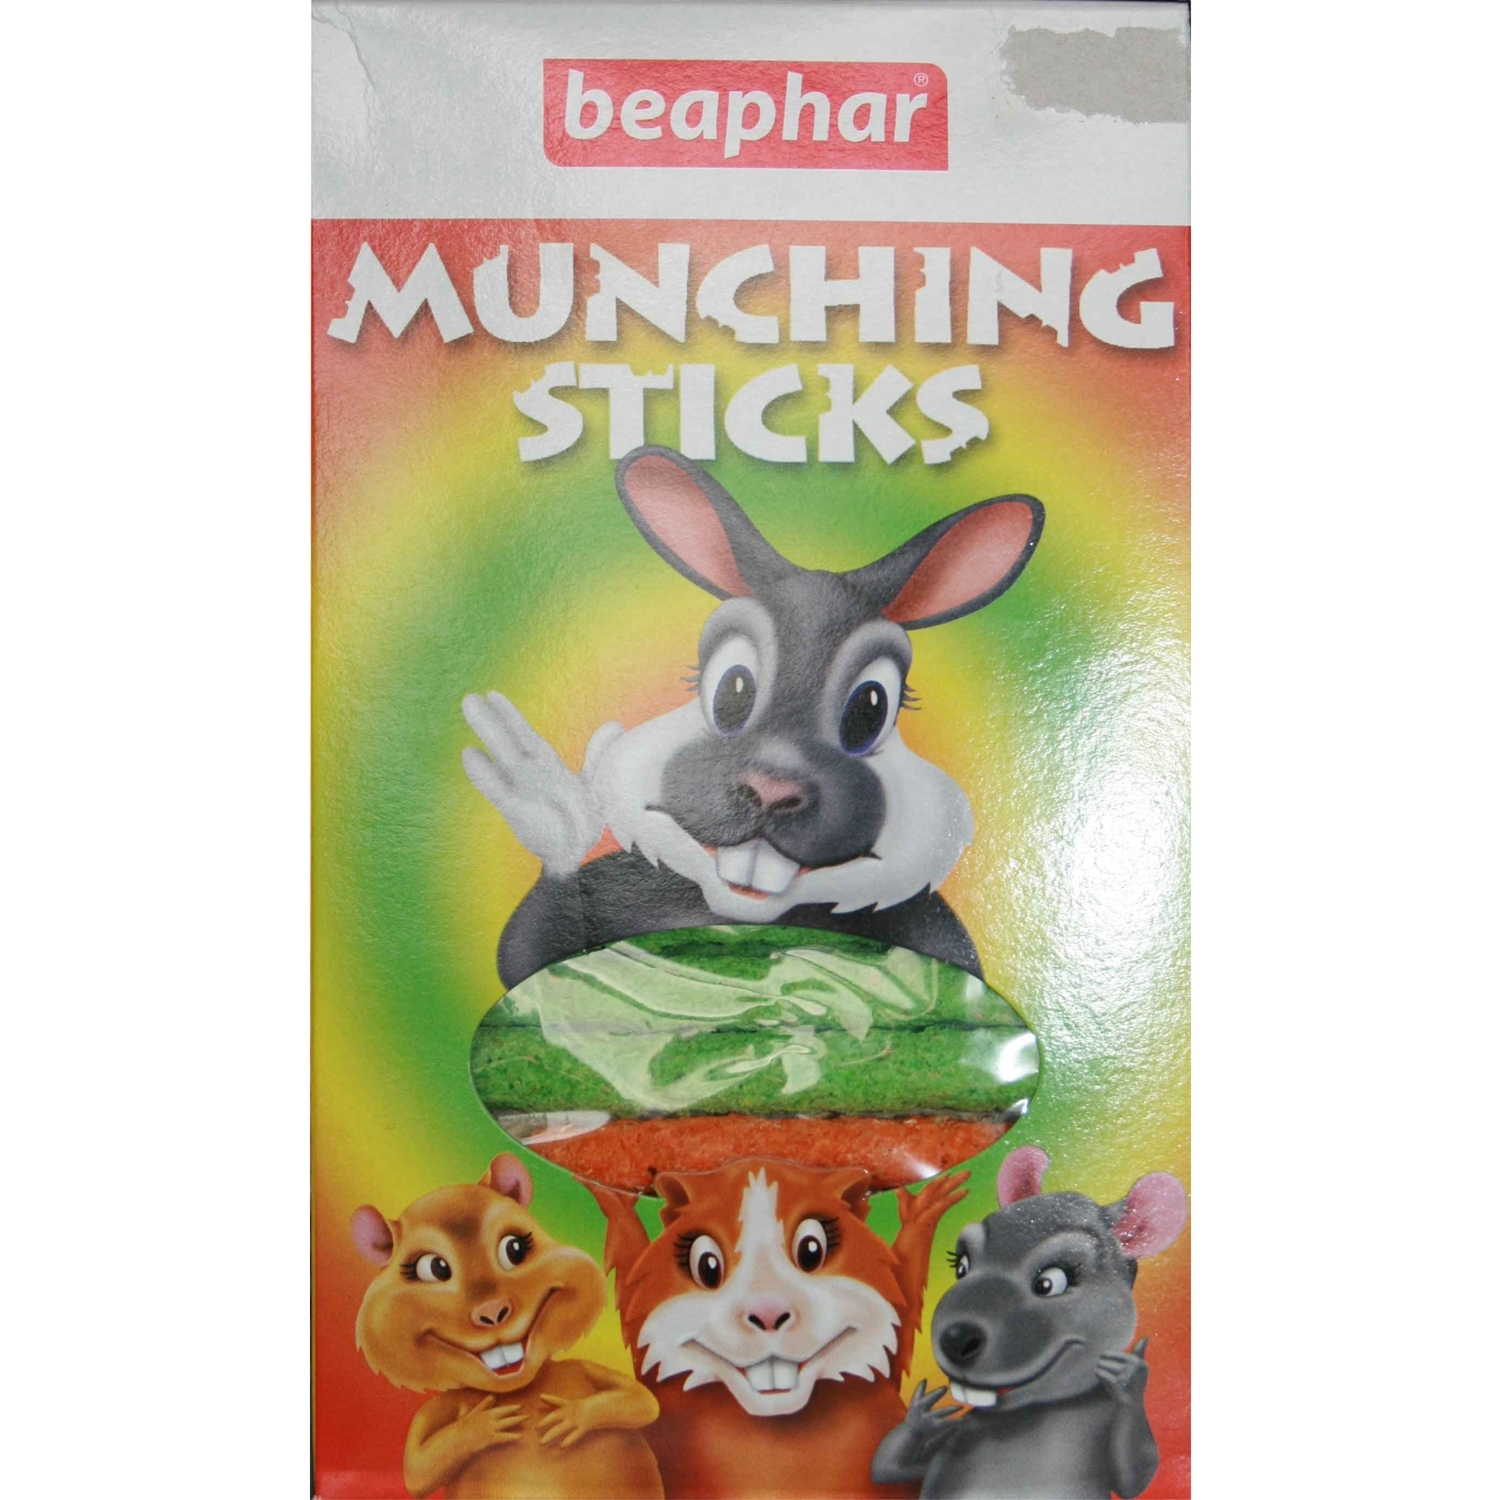 Beaphar Munching Sticks Small Animals Image